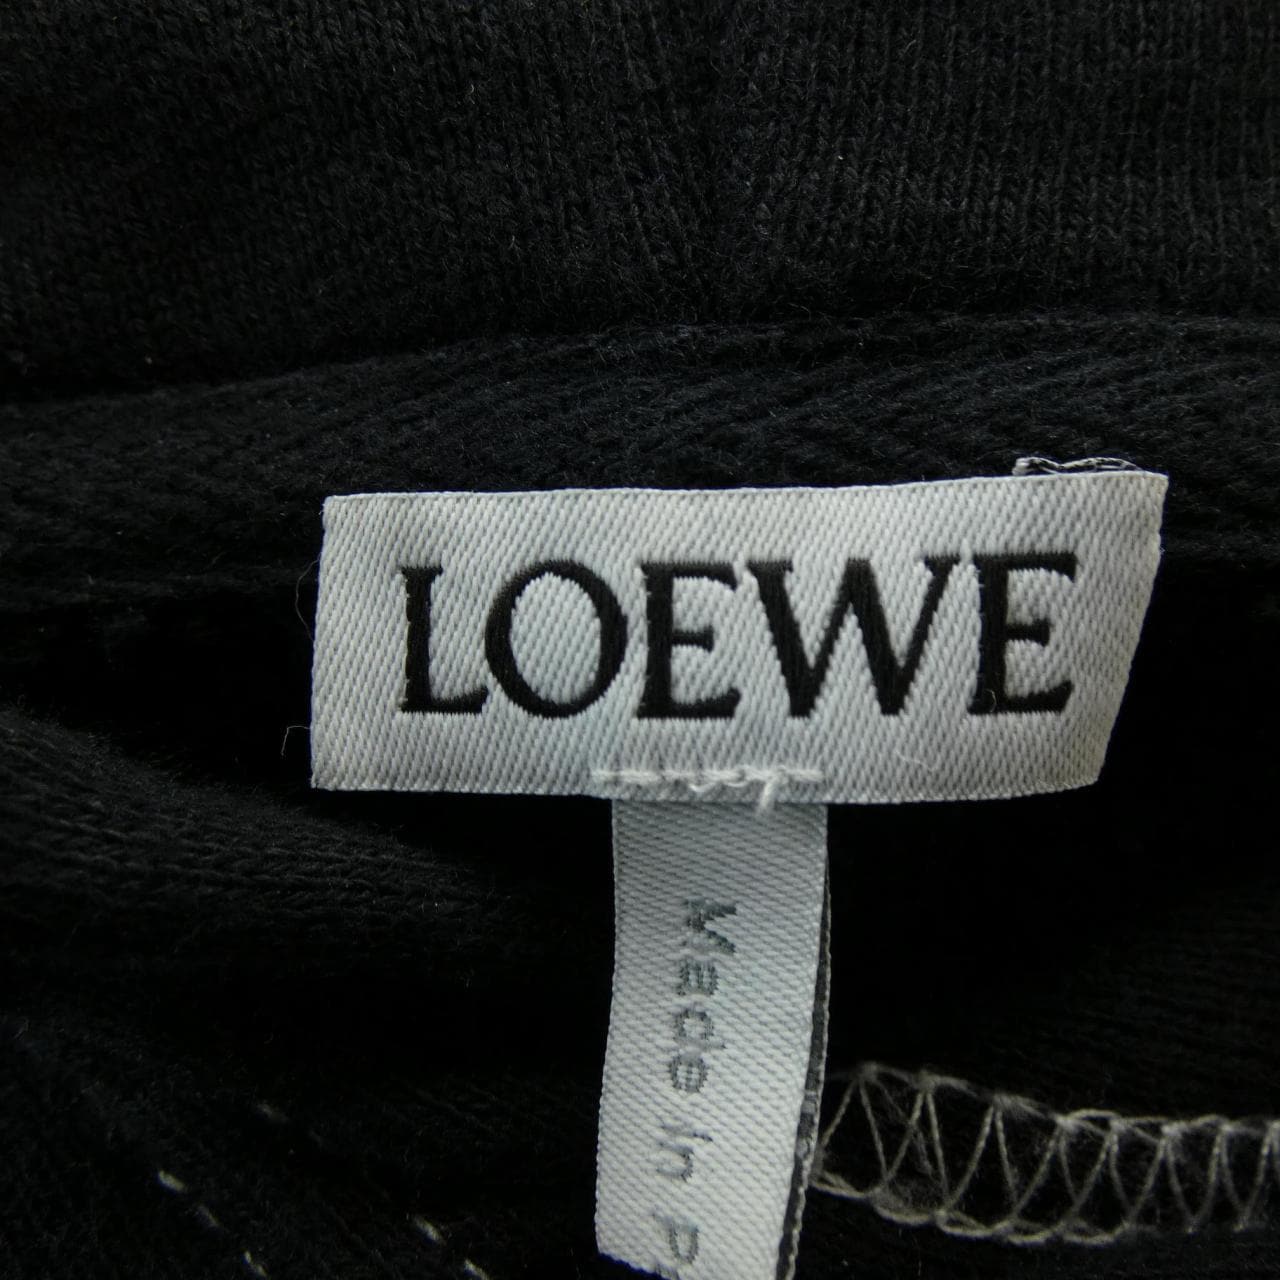 罗意威 (Loewe) 罗意威 (Loewe) PARKER